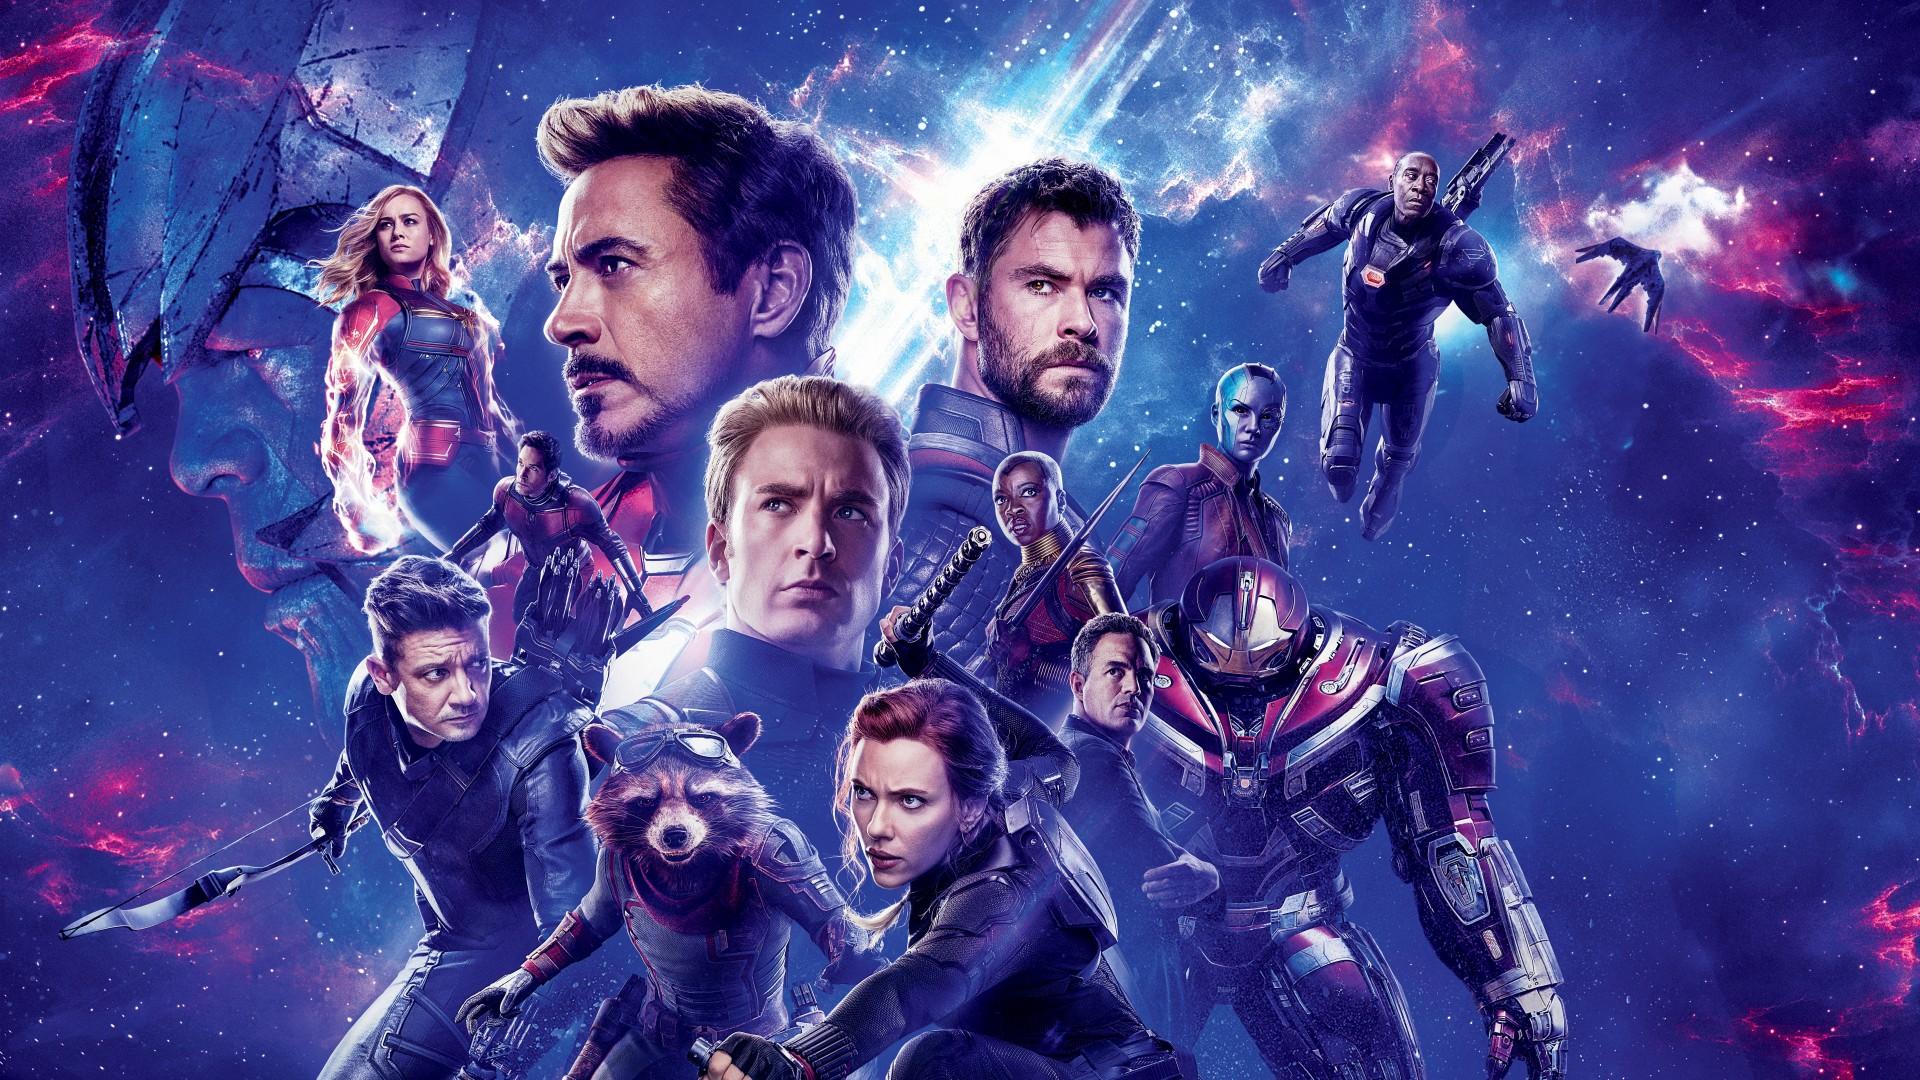 Avengers Endgame 2019 Movie Poster Wallpaper